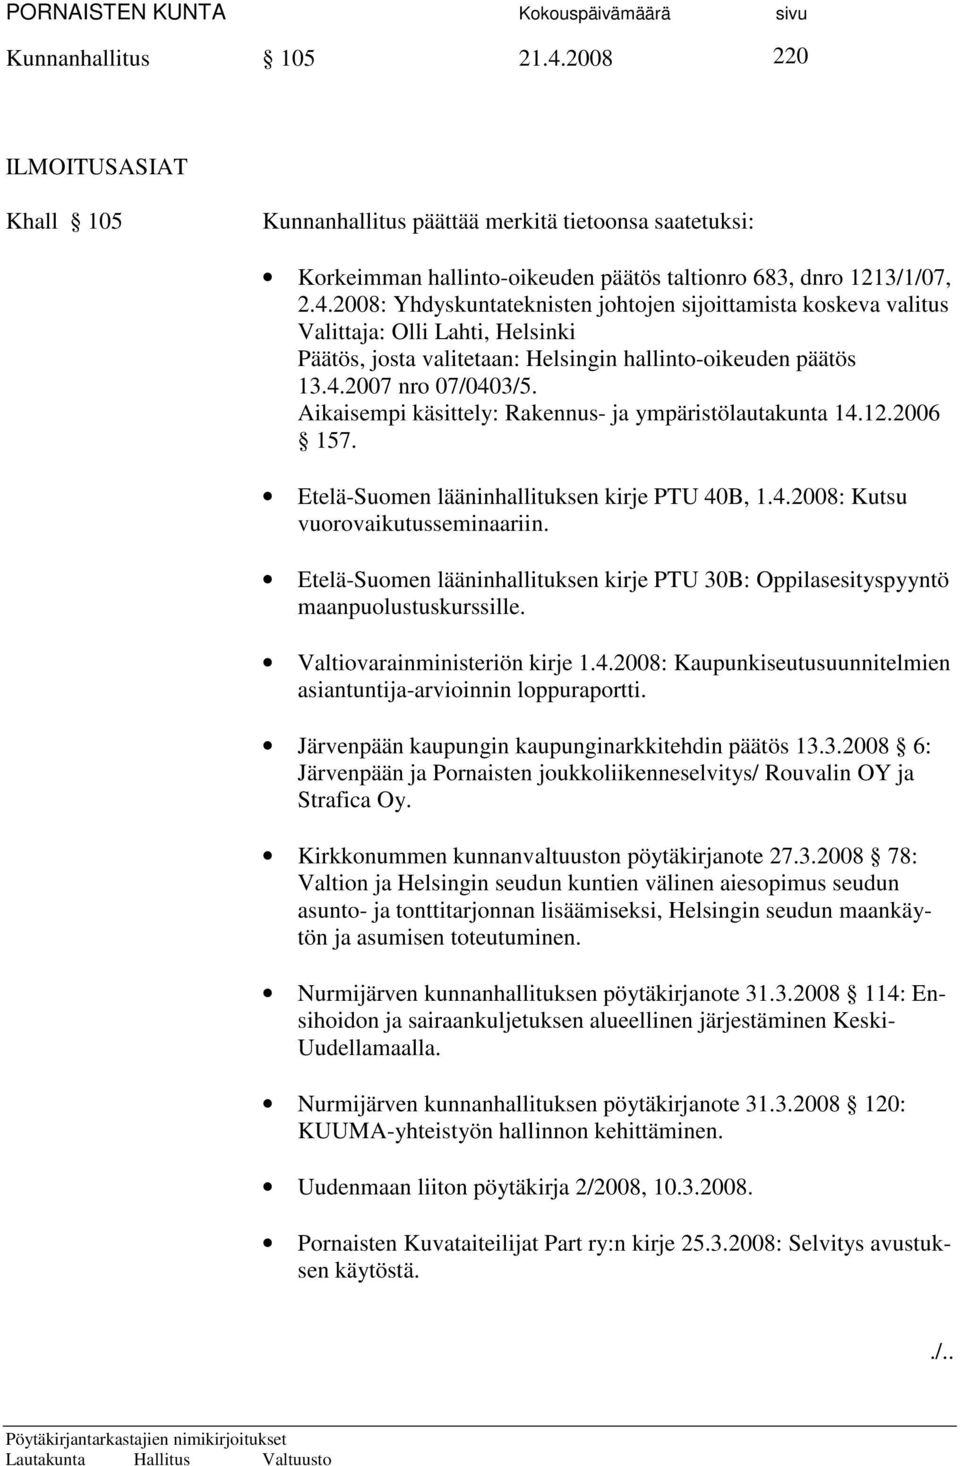 Etelä-Suomen lääninhallituksen kirje PTU 30B: Oppilasesityspyyntö maanpuolustuskurssille. Valtiovarainministeriön kirje 1.4.2008: Kaupunkiseutusuunnitelmien asiantuntija-arvioinnin loppuraportti.